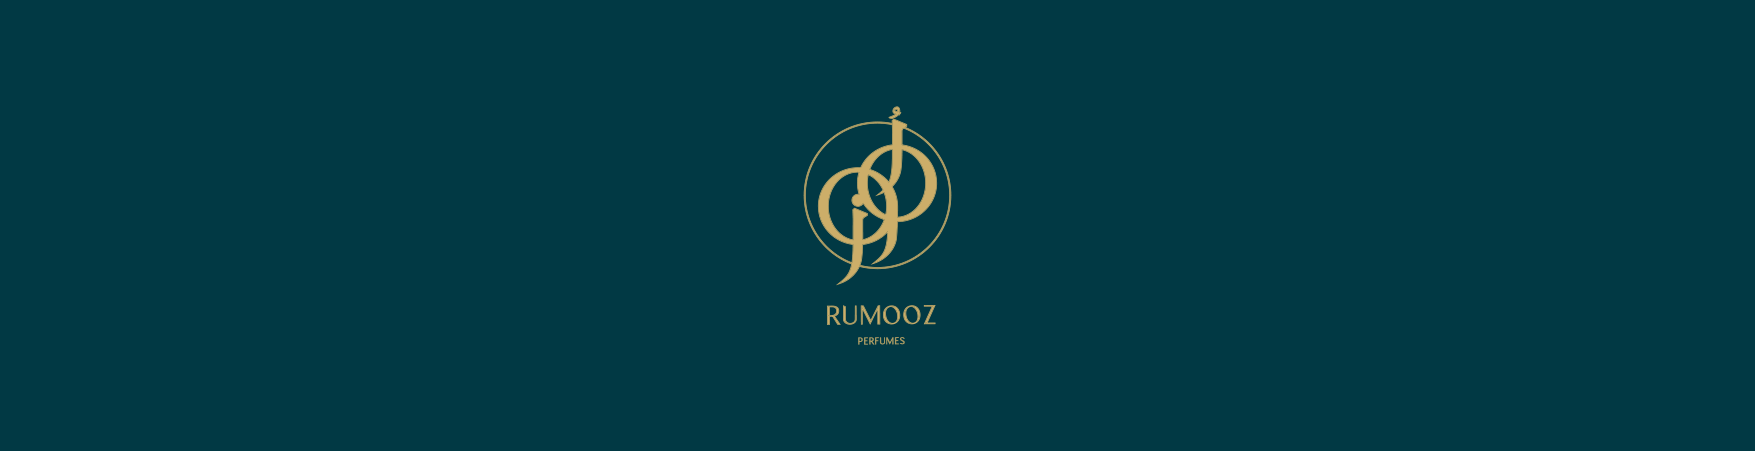 Rumooz Perfumes